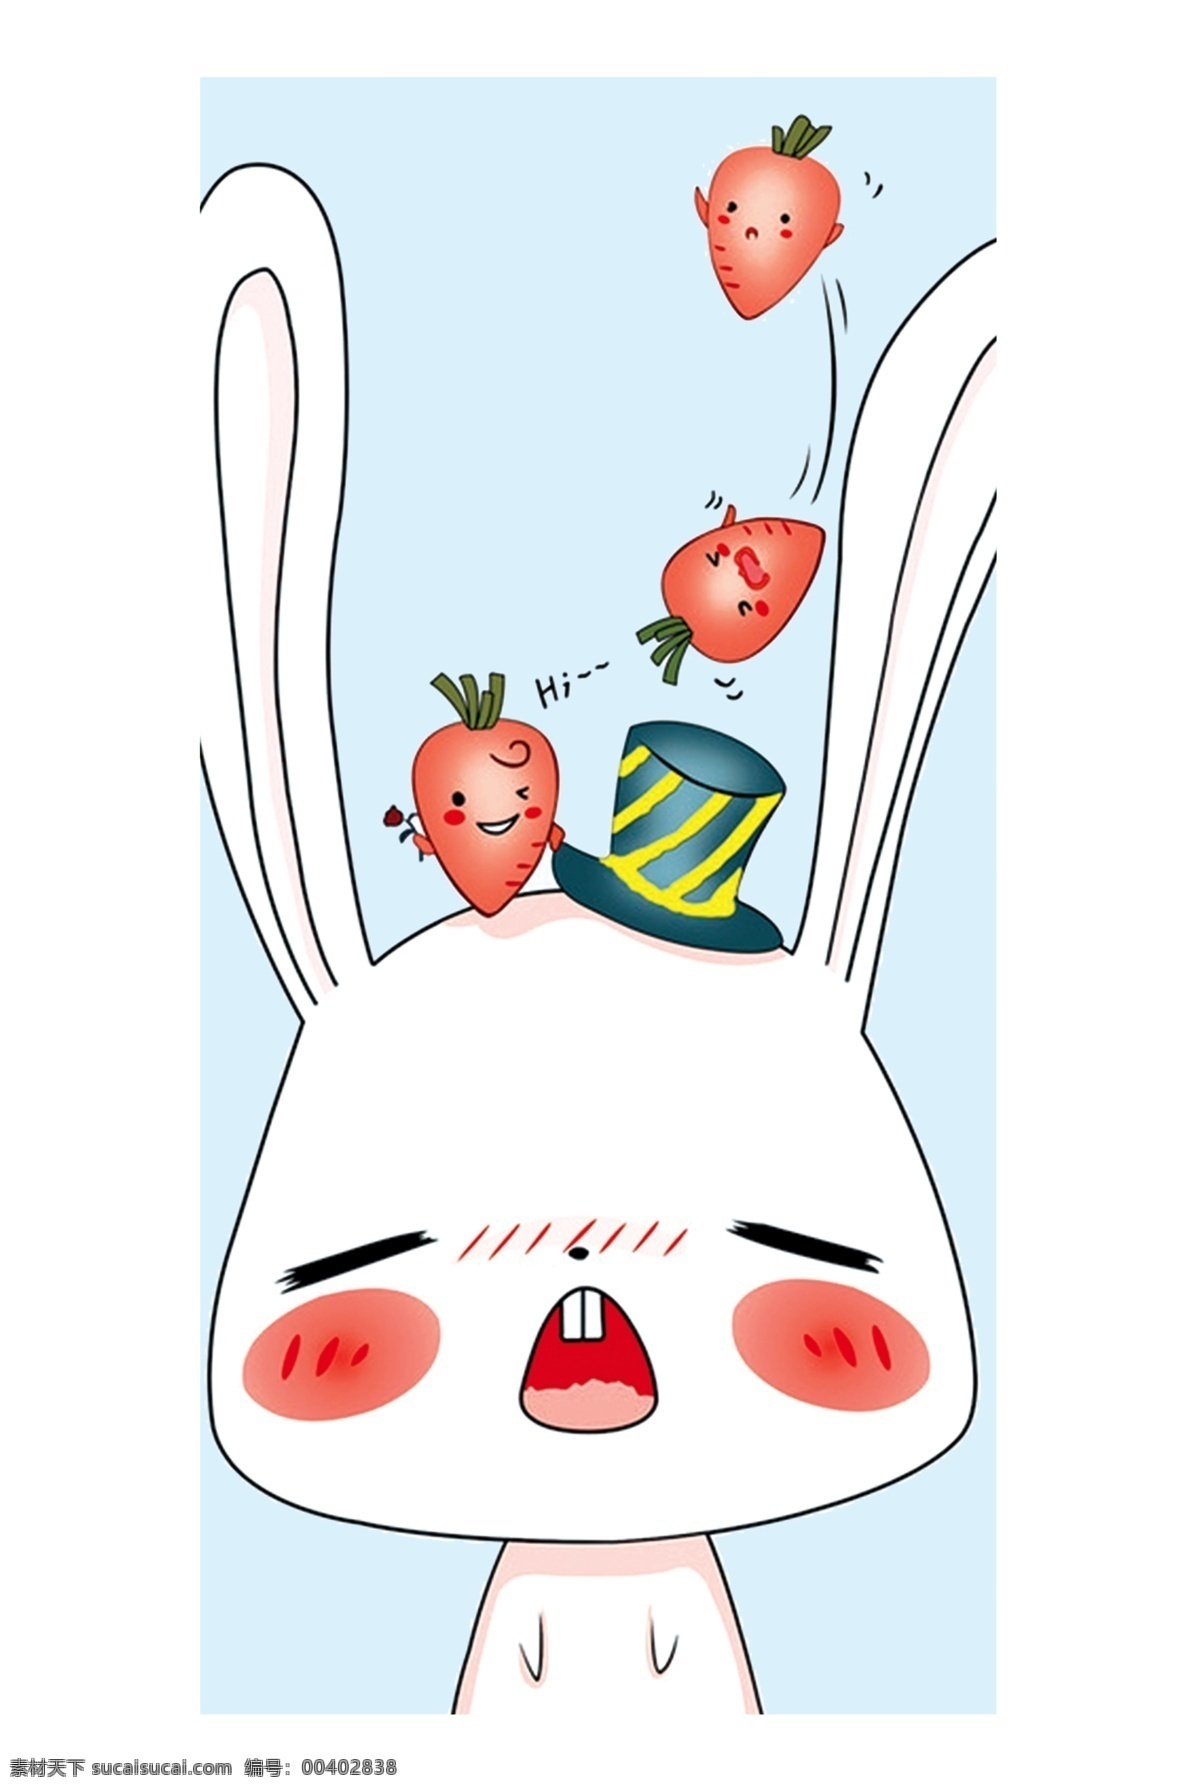 新款手机壳 时尚手机壳 潮流手机壳 新潮手机壳 兔子 萌 可爱兔子 可爱兔 兔兔 包装设计